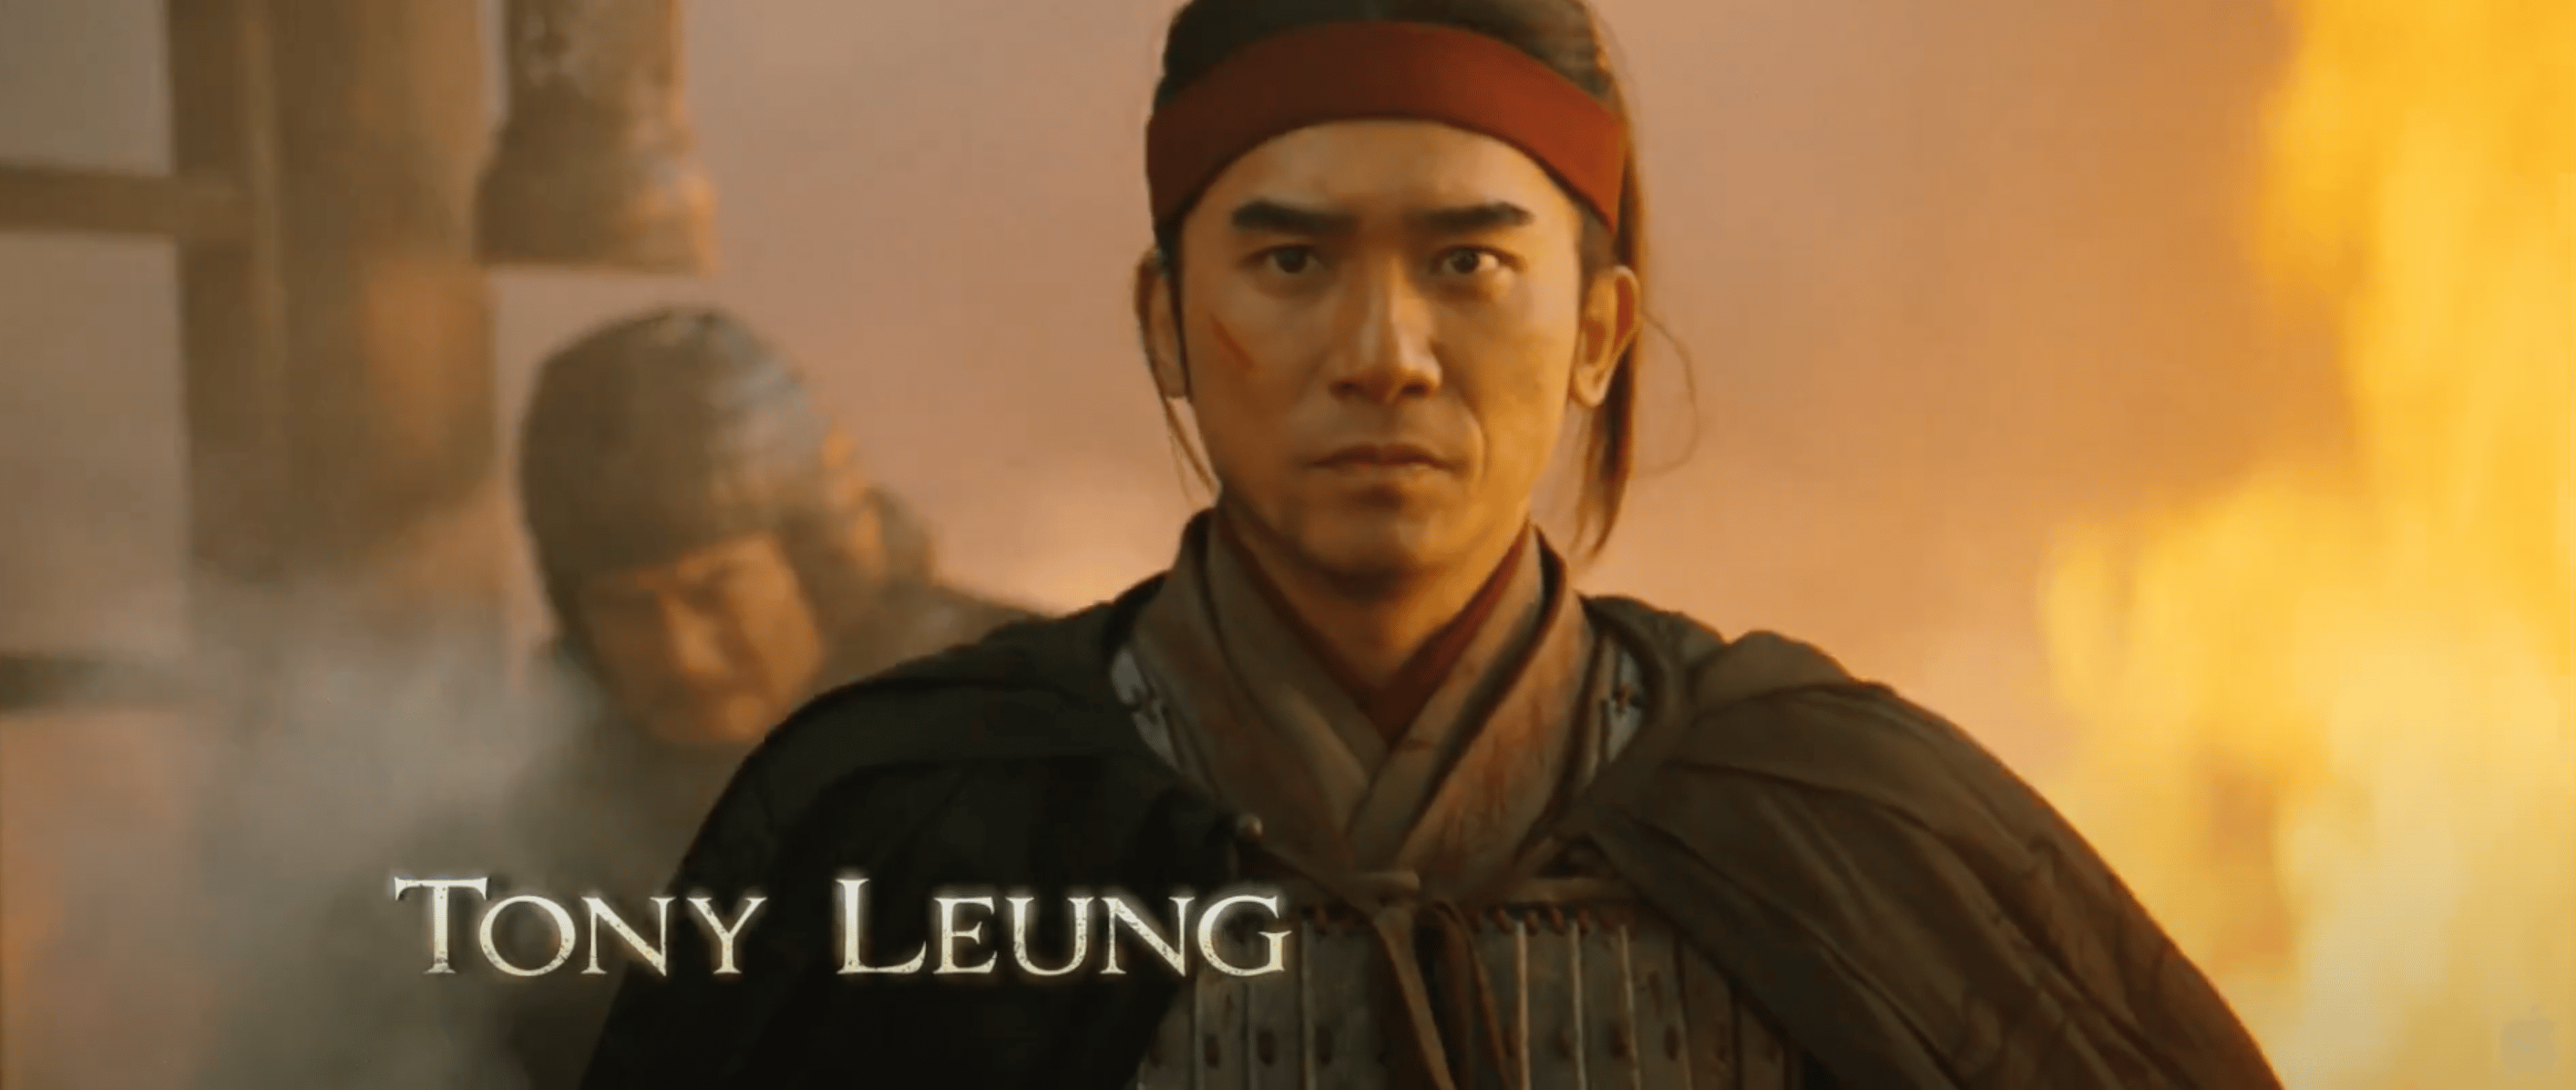 tony leung